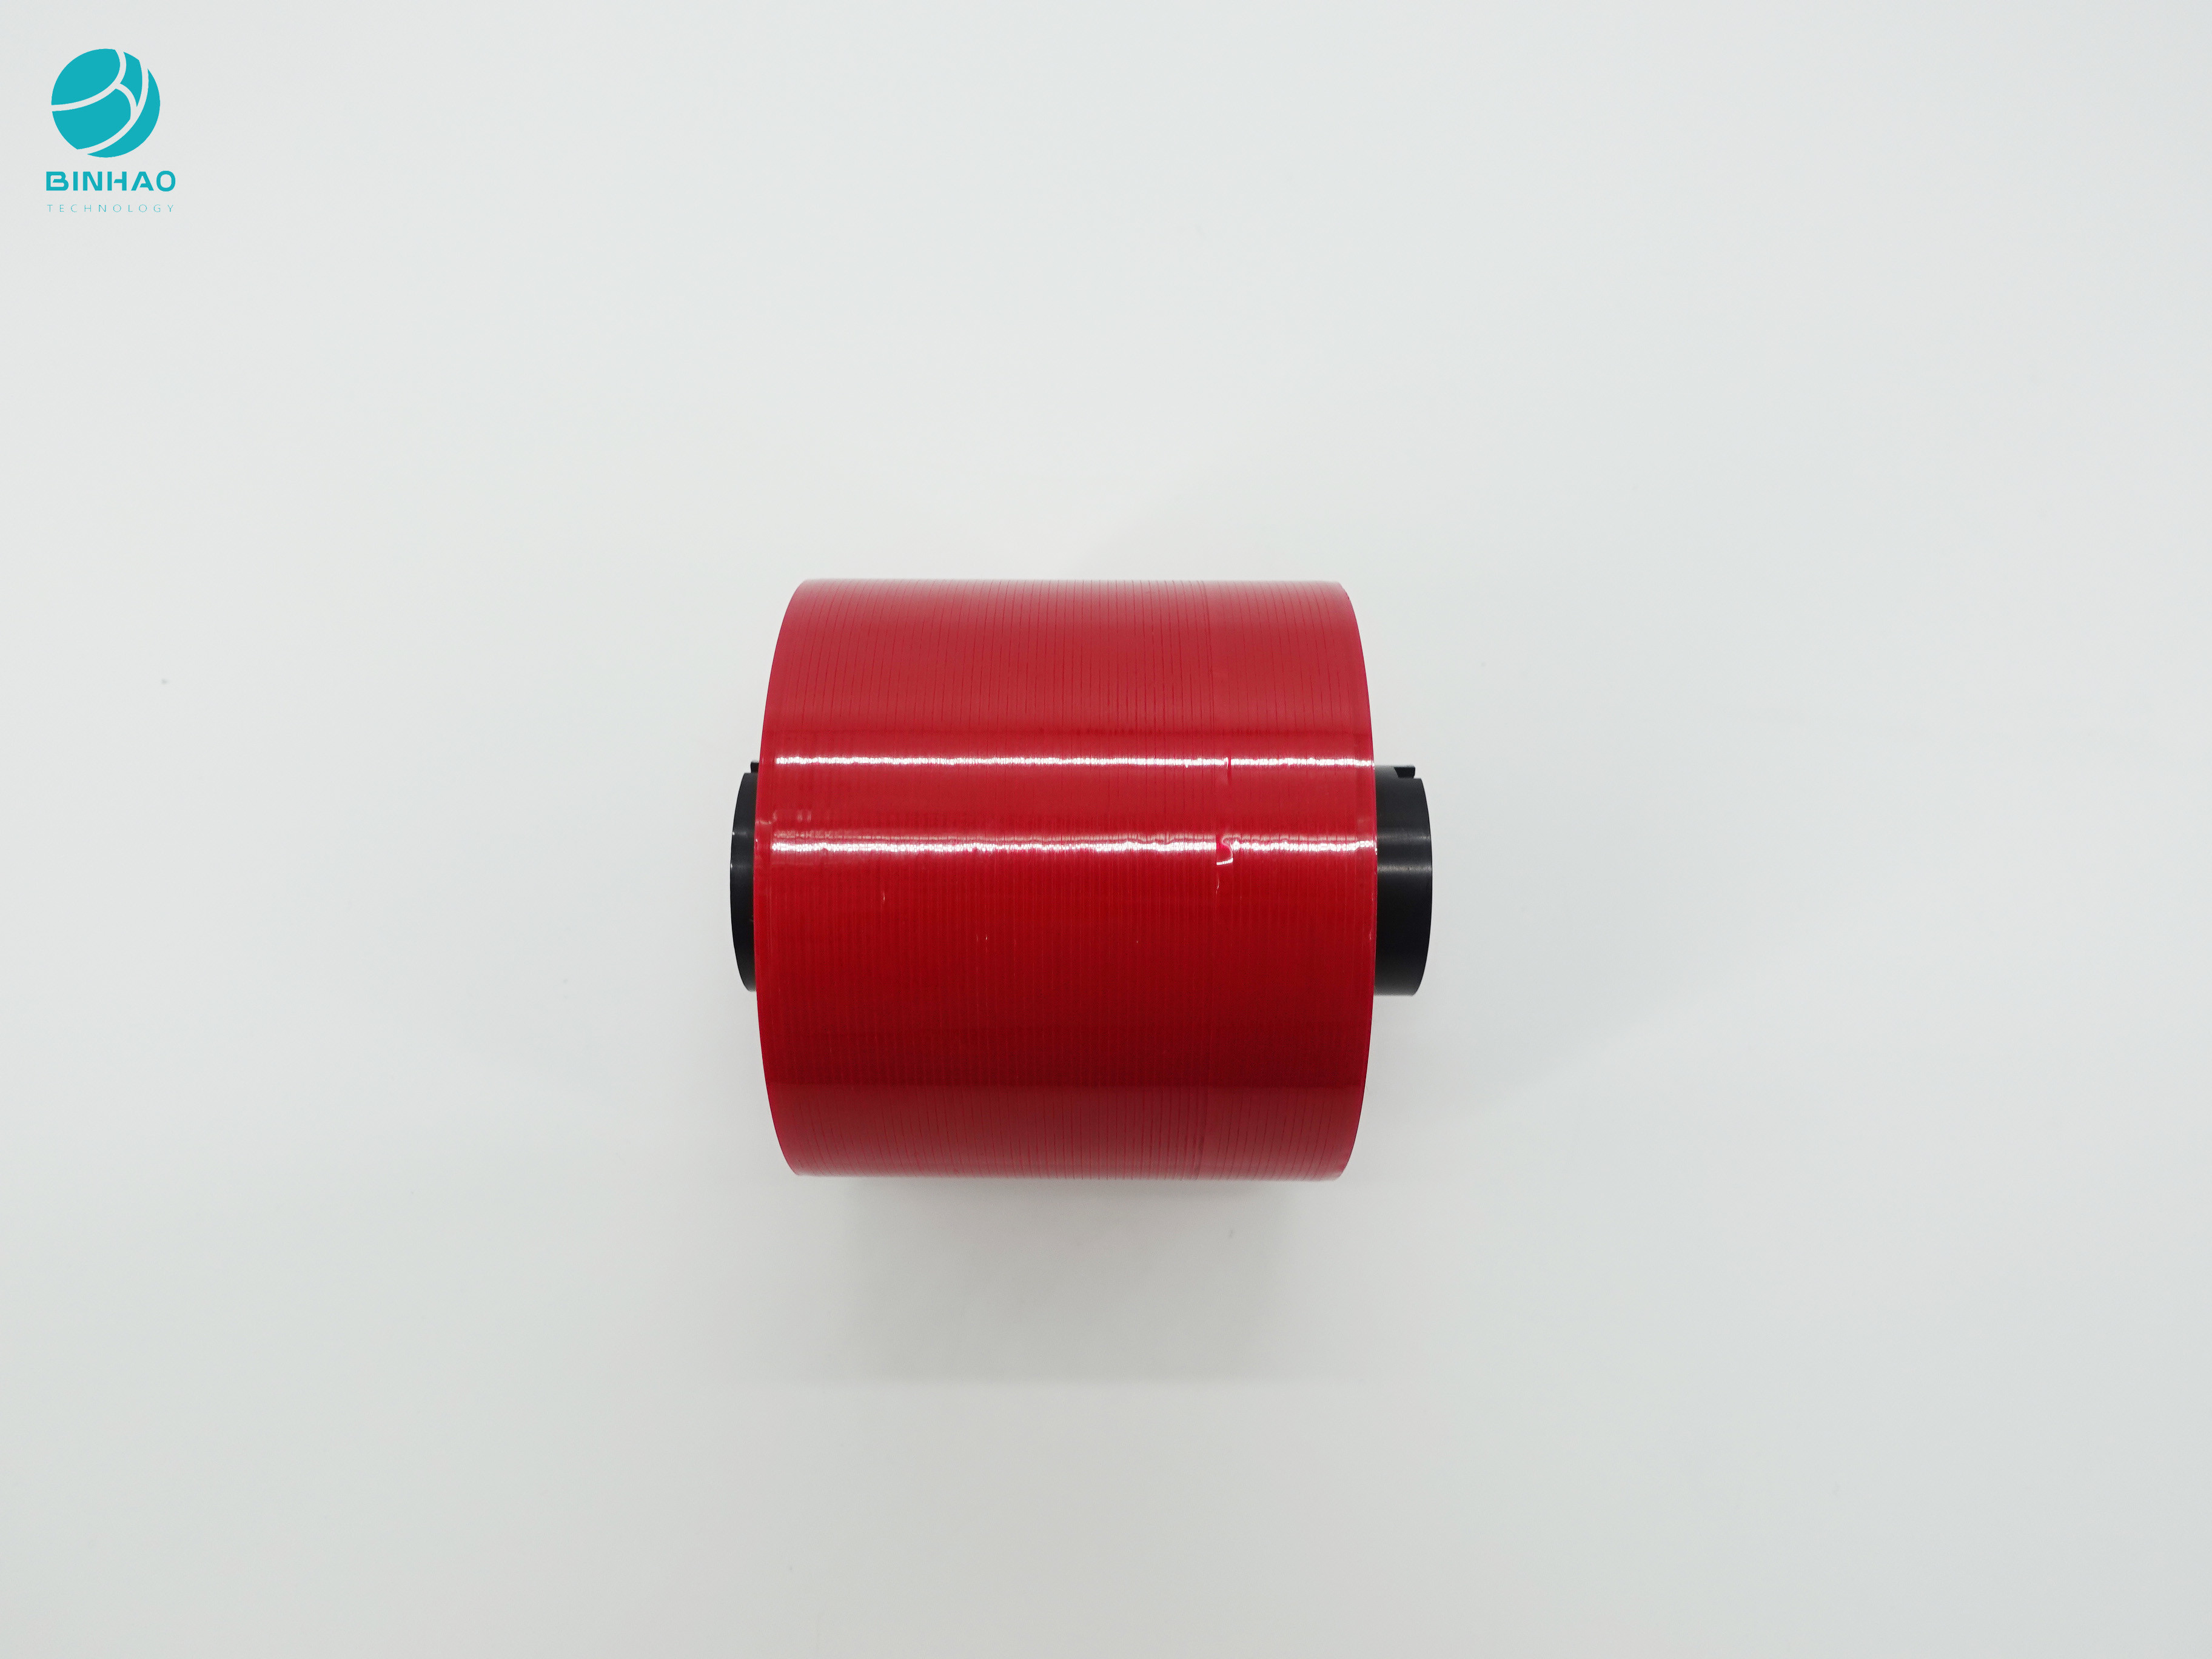 FMCG बॉक्स उत्पादों की पैकेजिंग के लिए 4 मिमी कस्टम डार्क रेड जंबो रोल्स टियर टेप